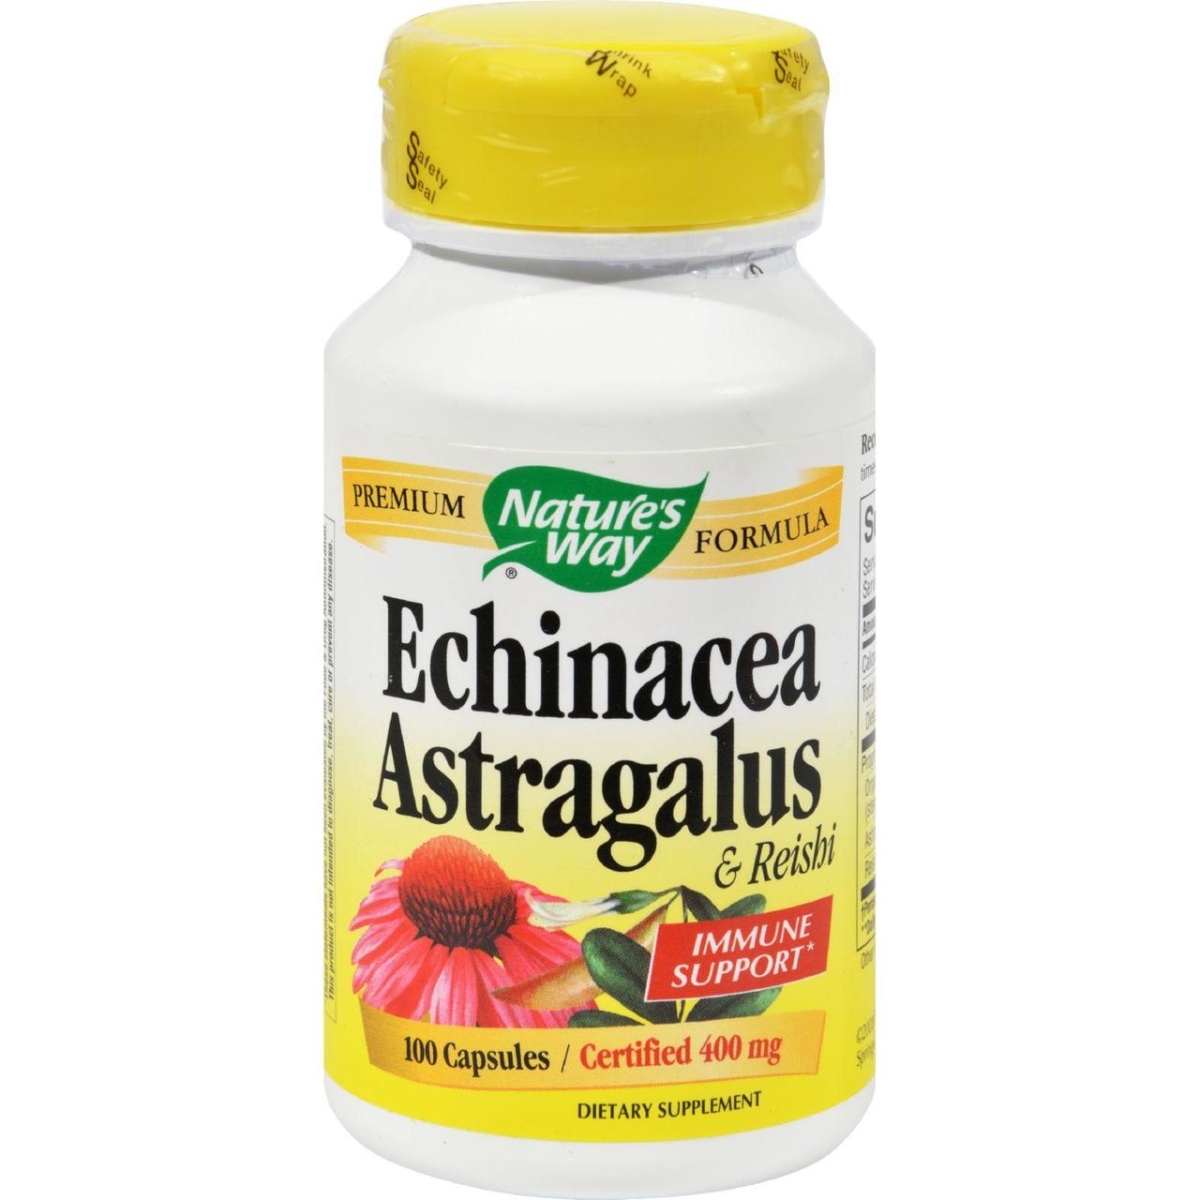 Hg0286302 Echinacea Astragalus & Reishi, 100 Capsules